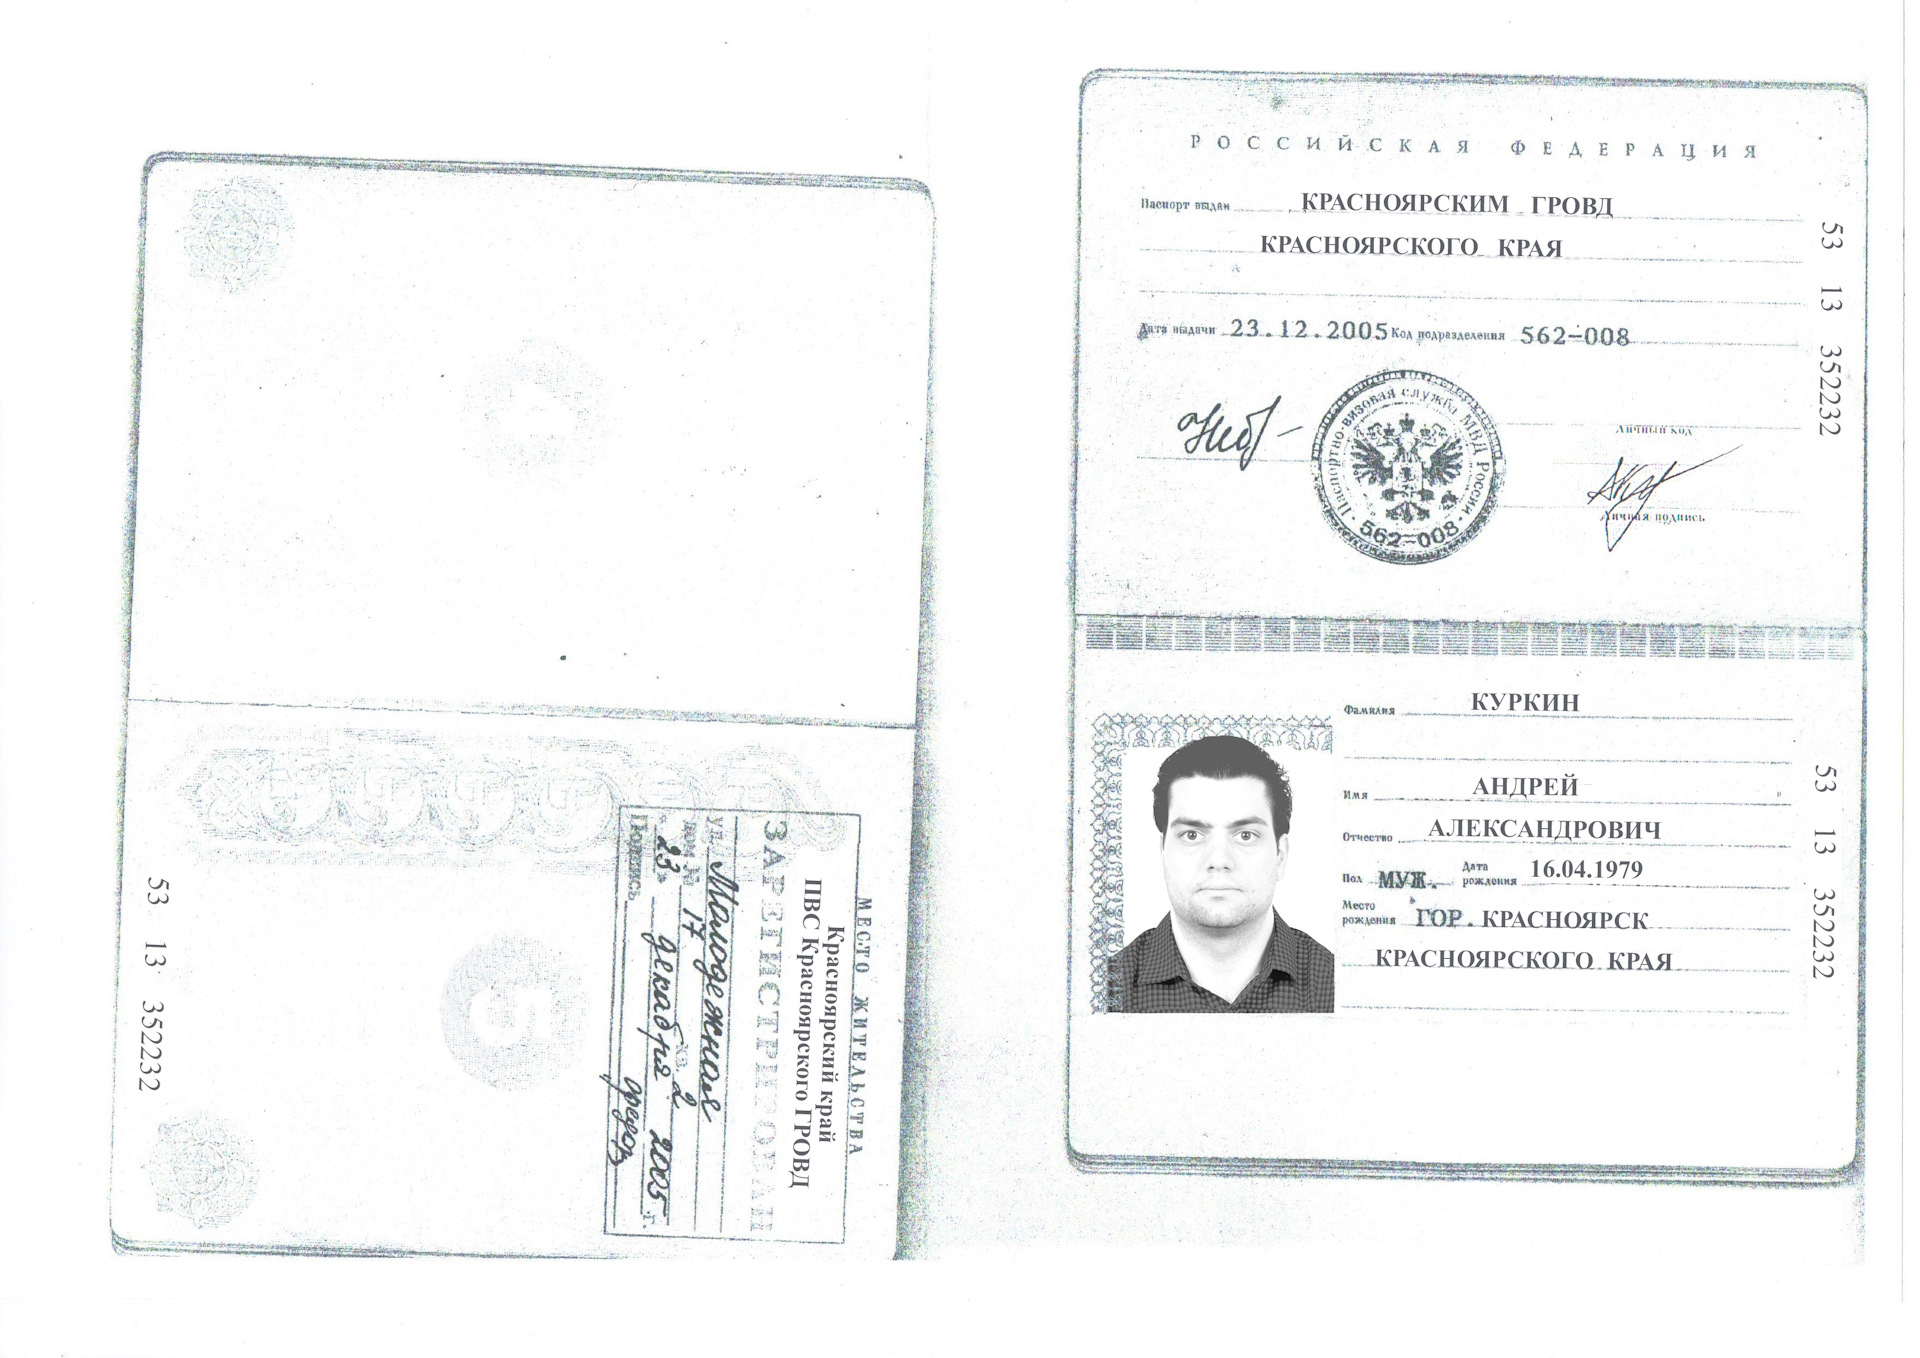 Скан паспорта РФ С пропиской